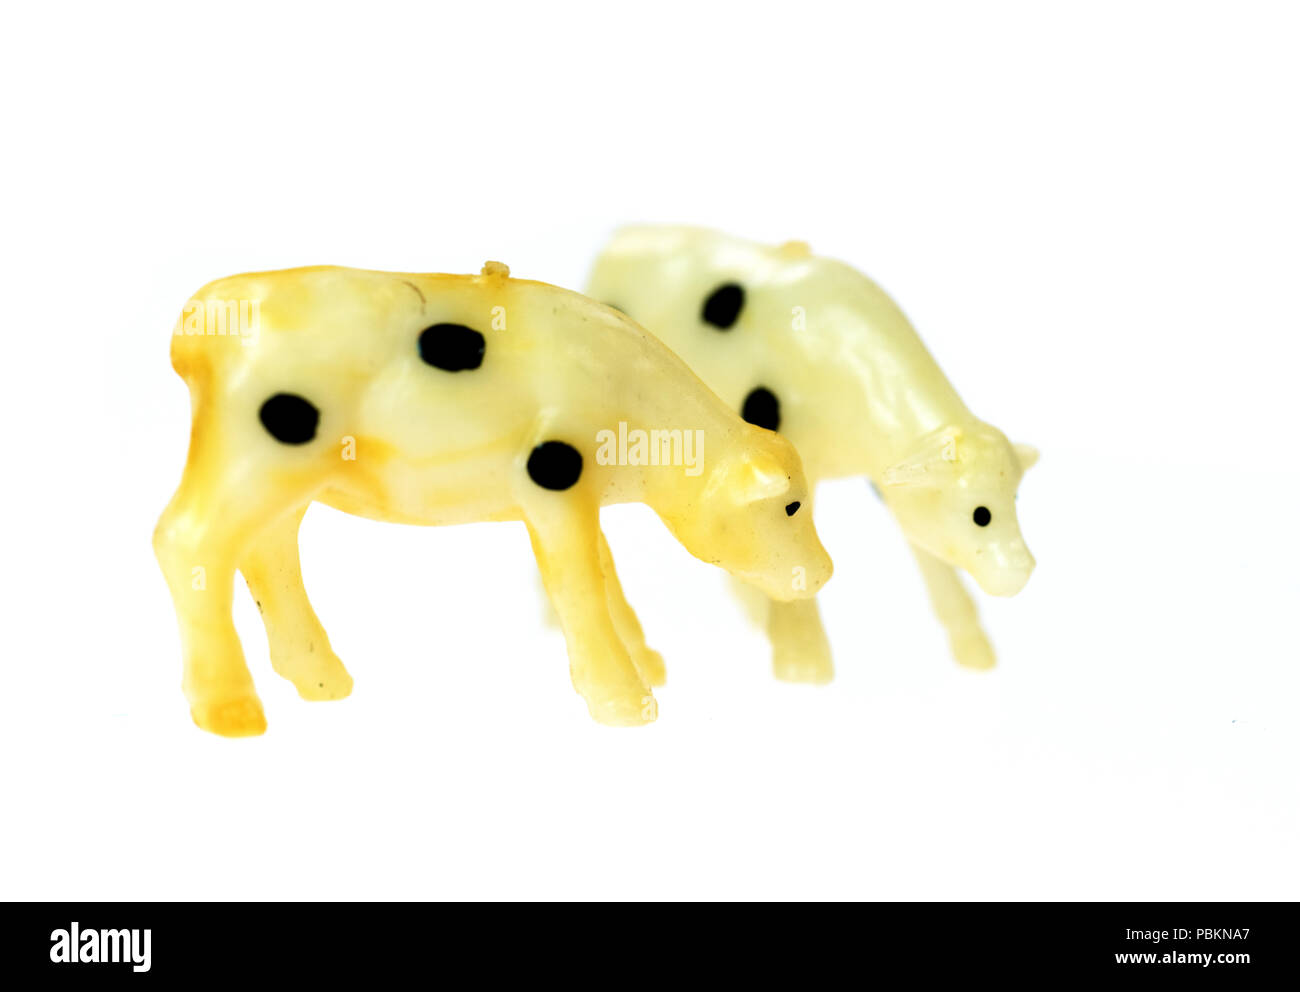 Les vaches d'un jouet vintage Noah's Ark jouer ensemble, photographié sur un fond blanc. Banque D'Images